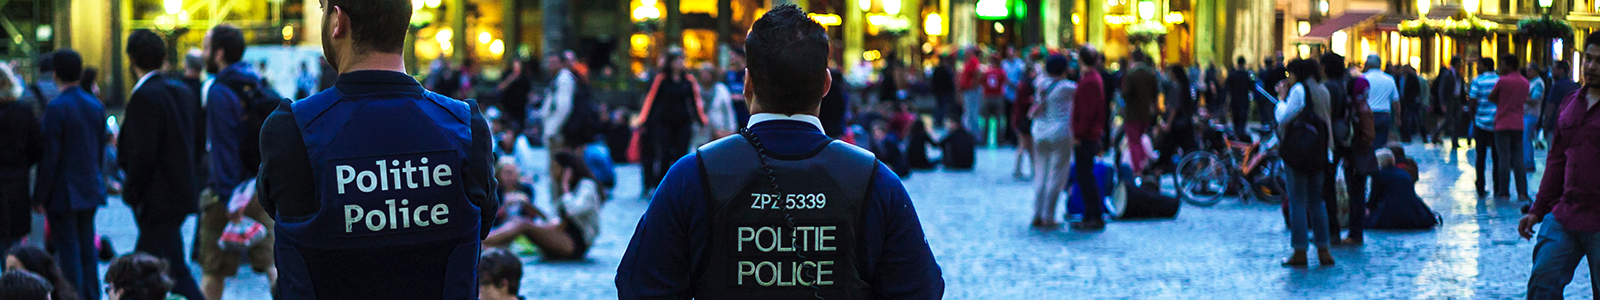 Belgische politieagenten bewaken Brussels plein bij schemering